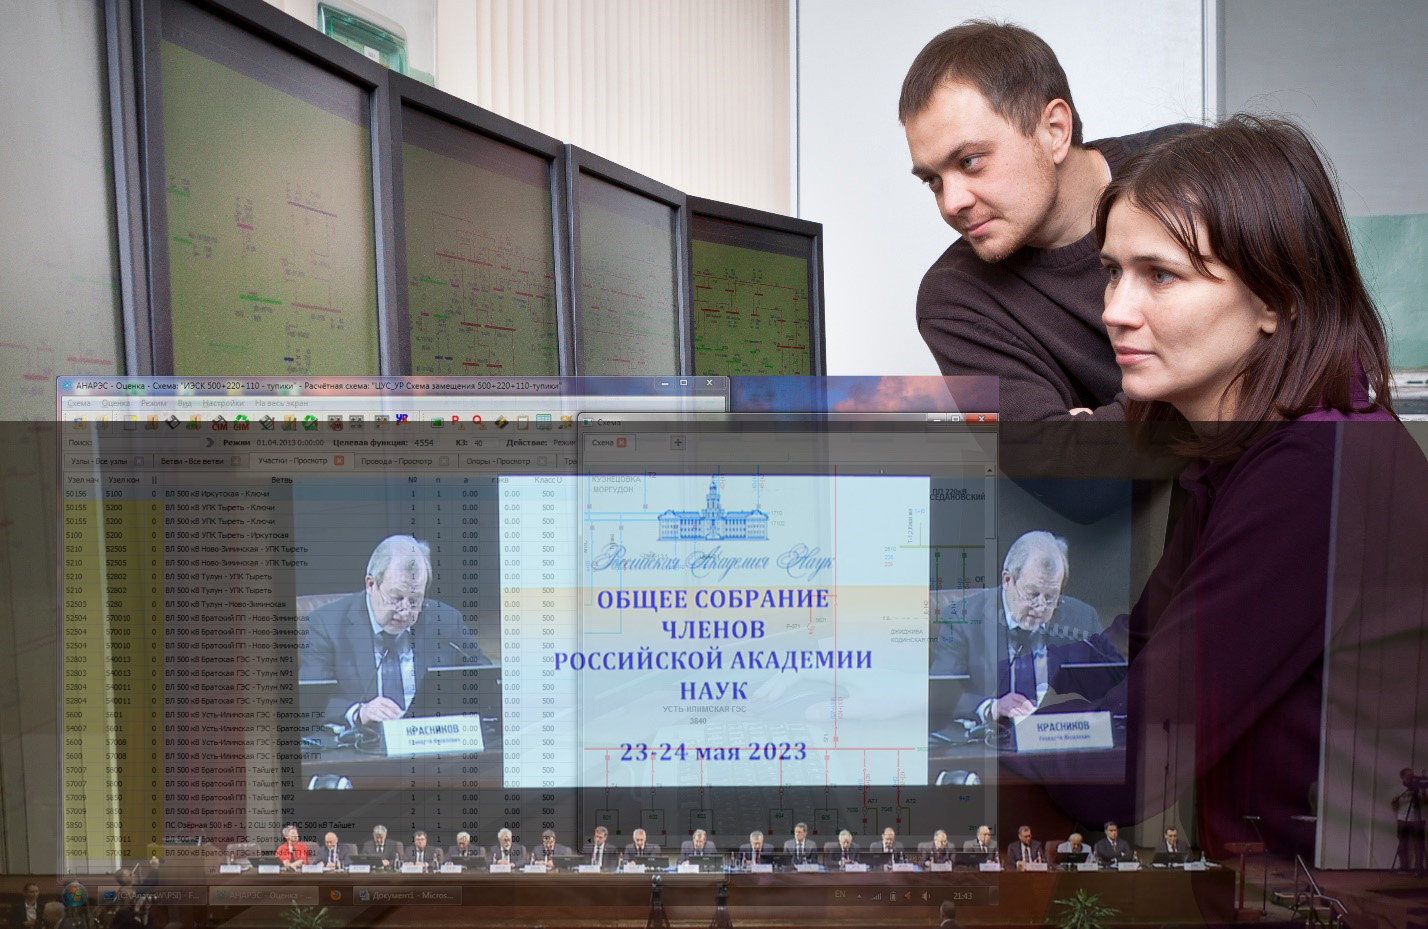 Технология интеллектуального управления режимами электроэнергетических систем - одна из ключевых разработок ИСЭМ СО РАН представлена на Общем собрании Российской академии наук